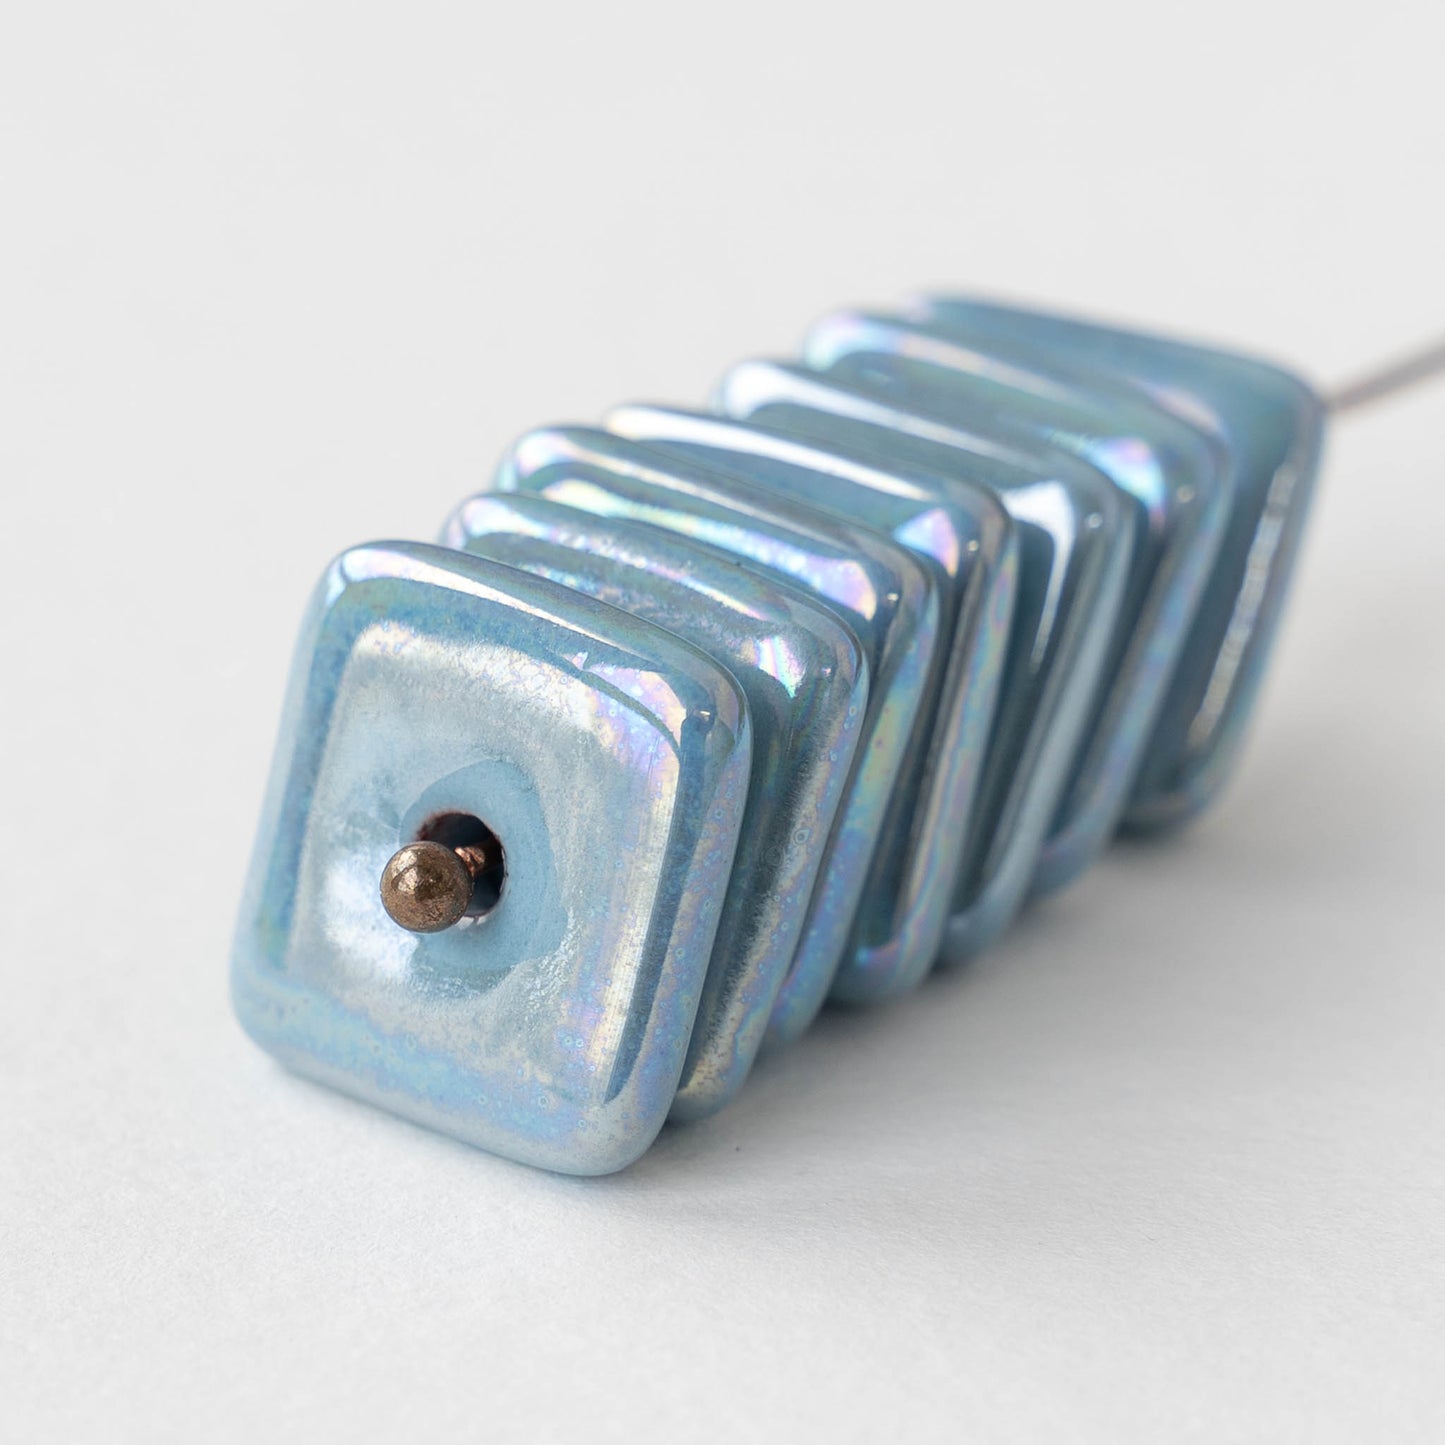 17mm Glazed Ceramic Square Tiles - Iridescent Light Blue - 4 beads